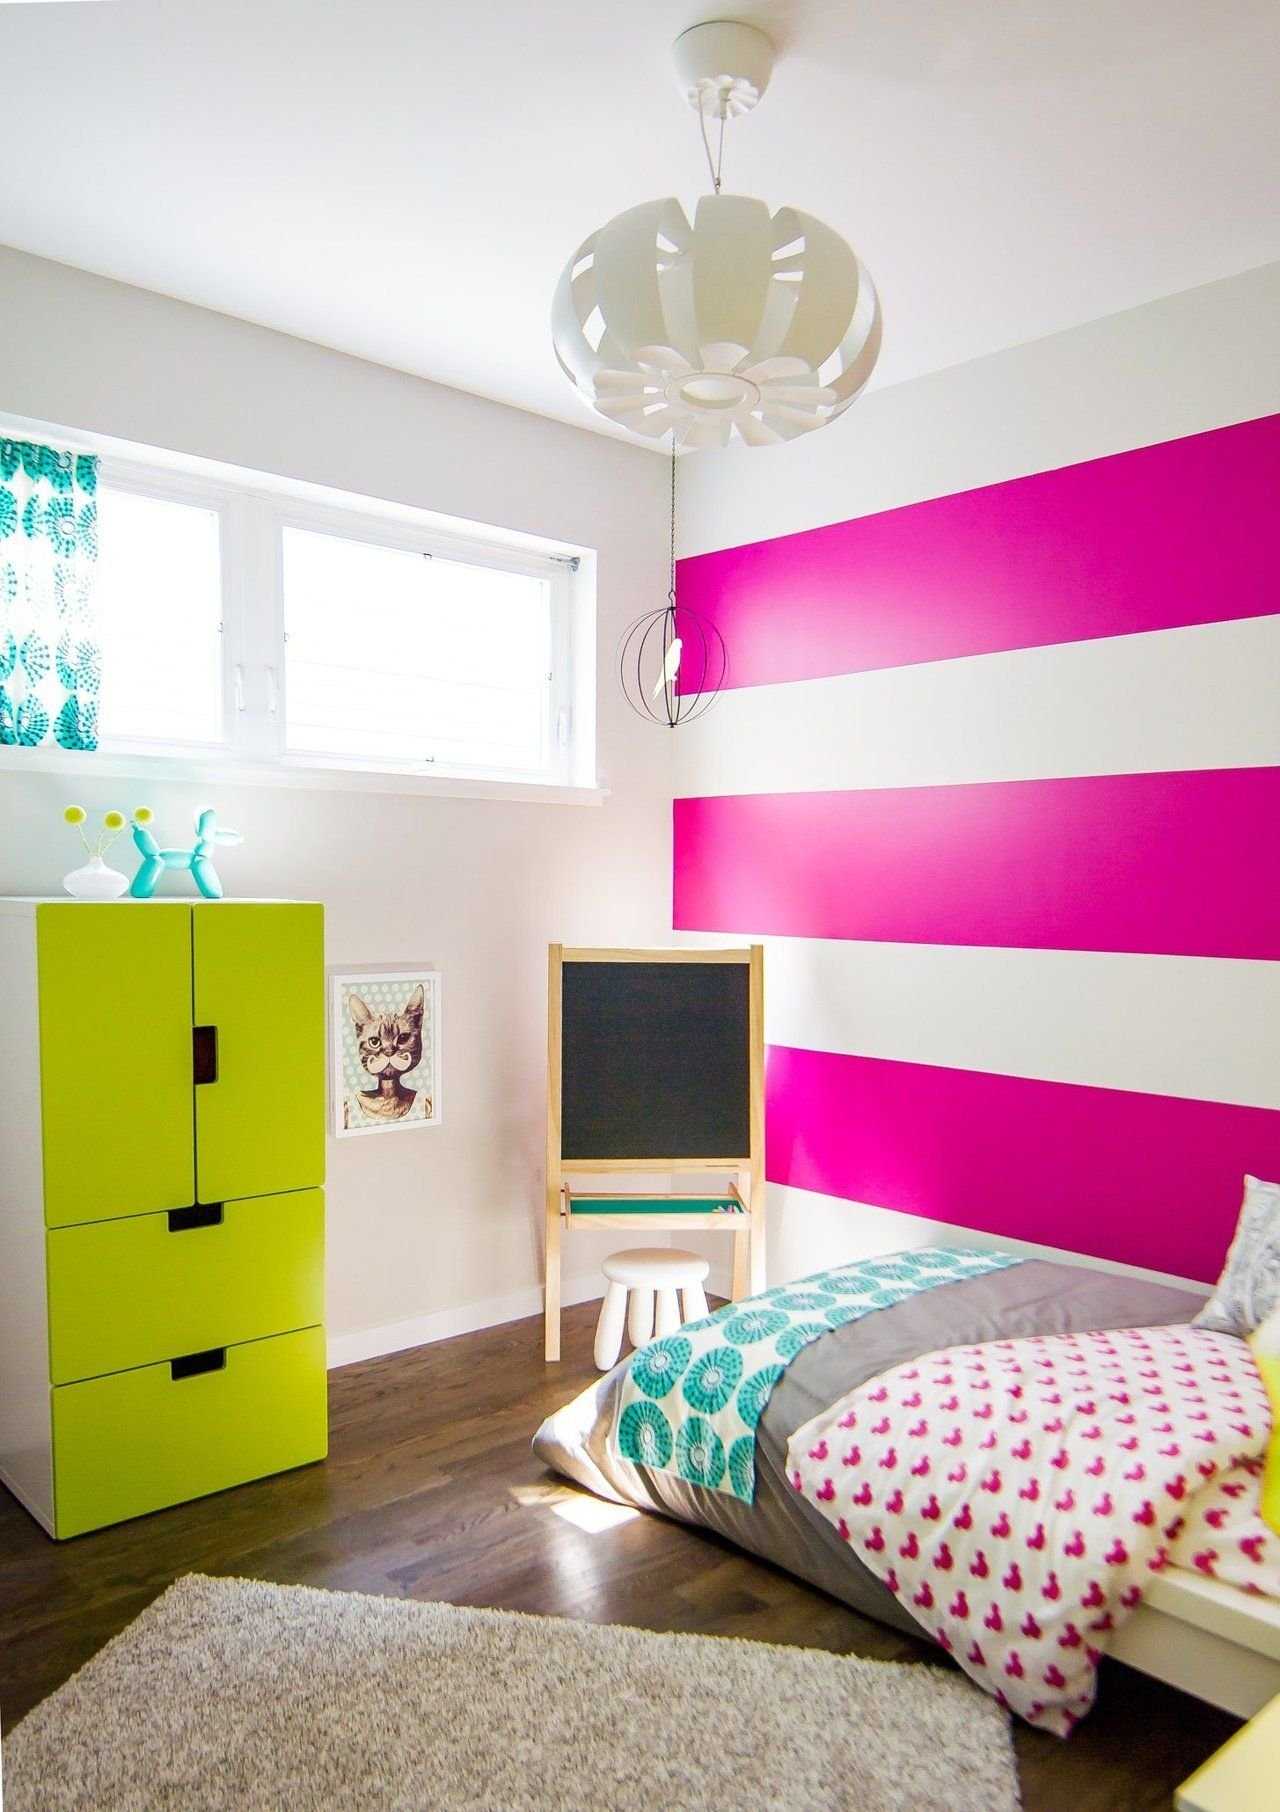 Какой должен быть дизайн комнаты для девочки подростка – концепции Цветовая гамма, расположение мебели Идеи, если девочек несколько